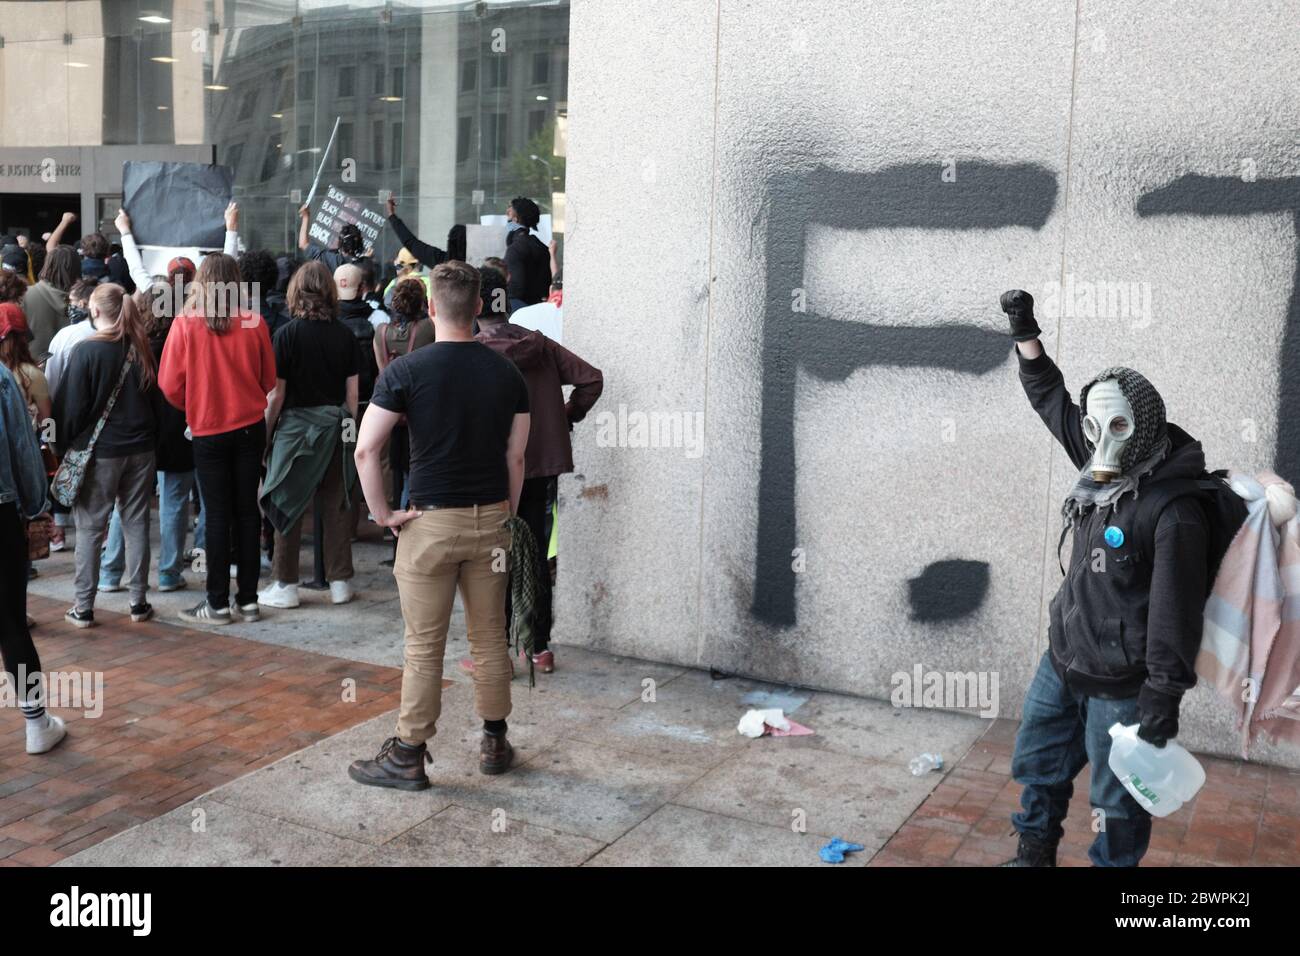 Un manifestant se tient devant un mur récemment graffiti devant le Justice Center, qui abrite la police de Cleveland, lors des manifestations à Cleveland, Ohio, États-Unis. Banque D'Images